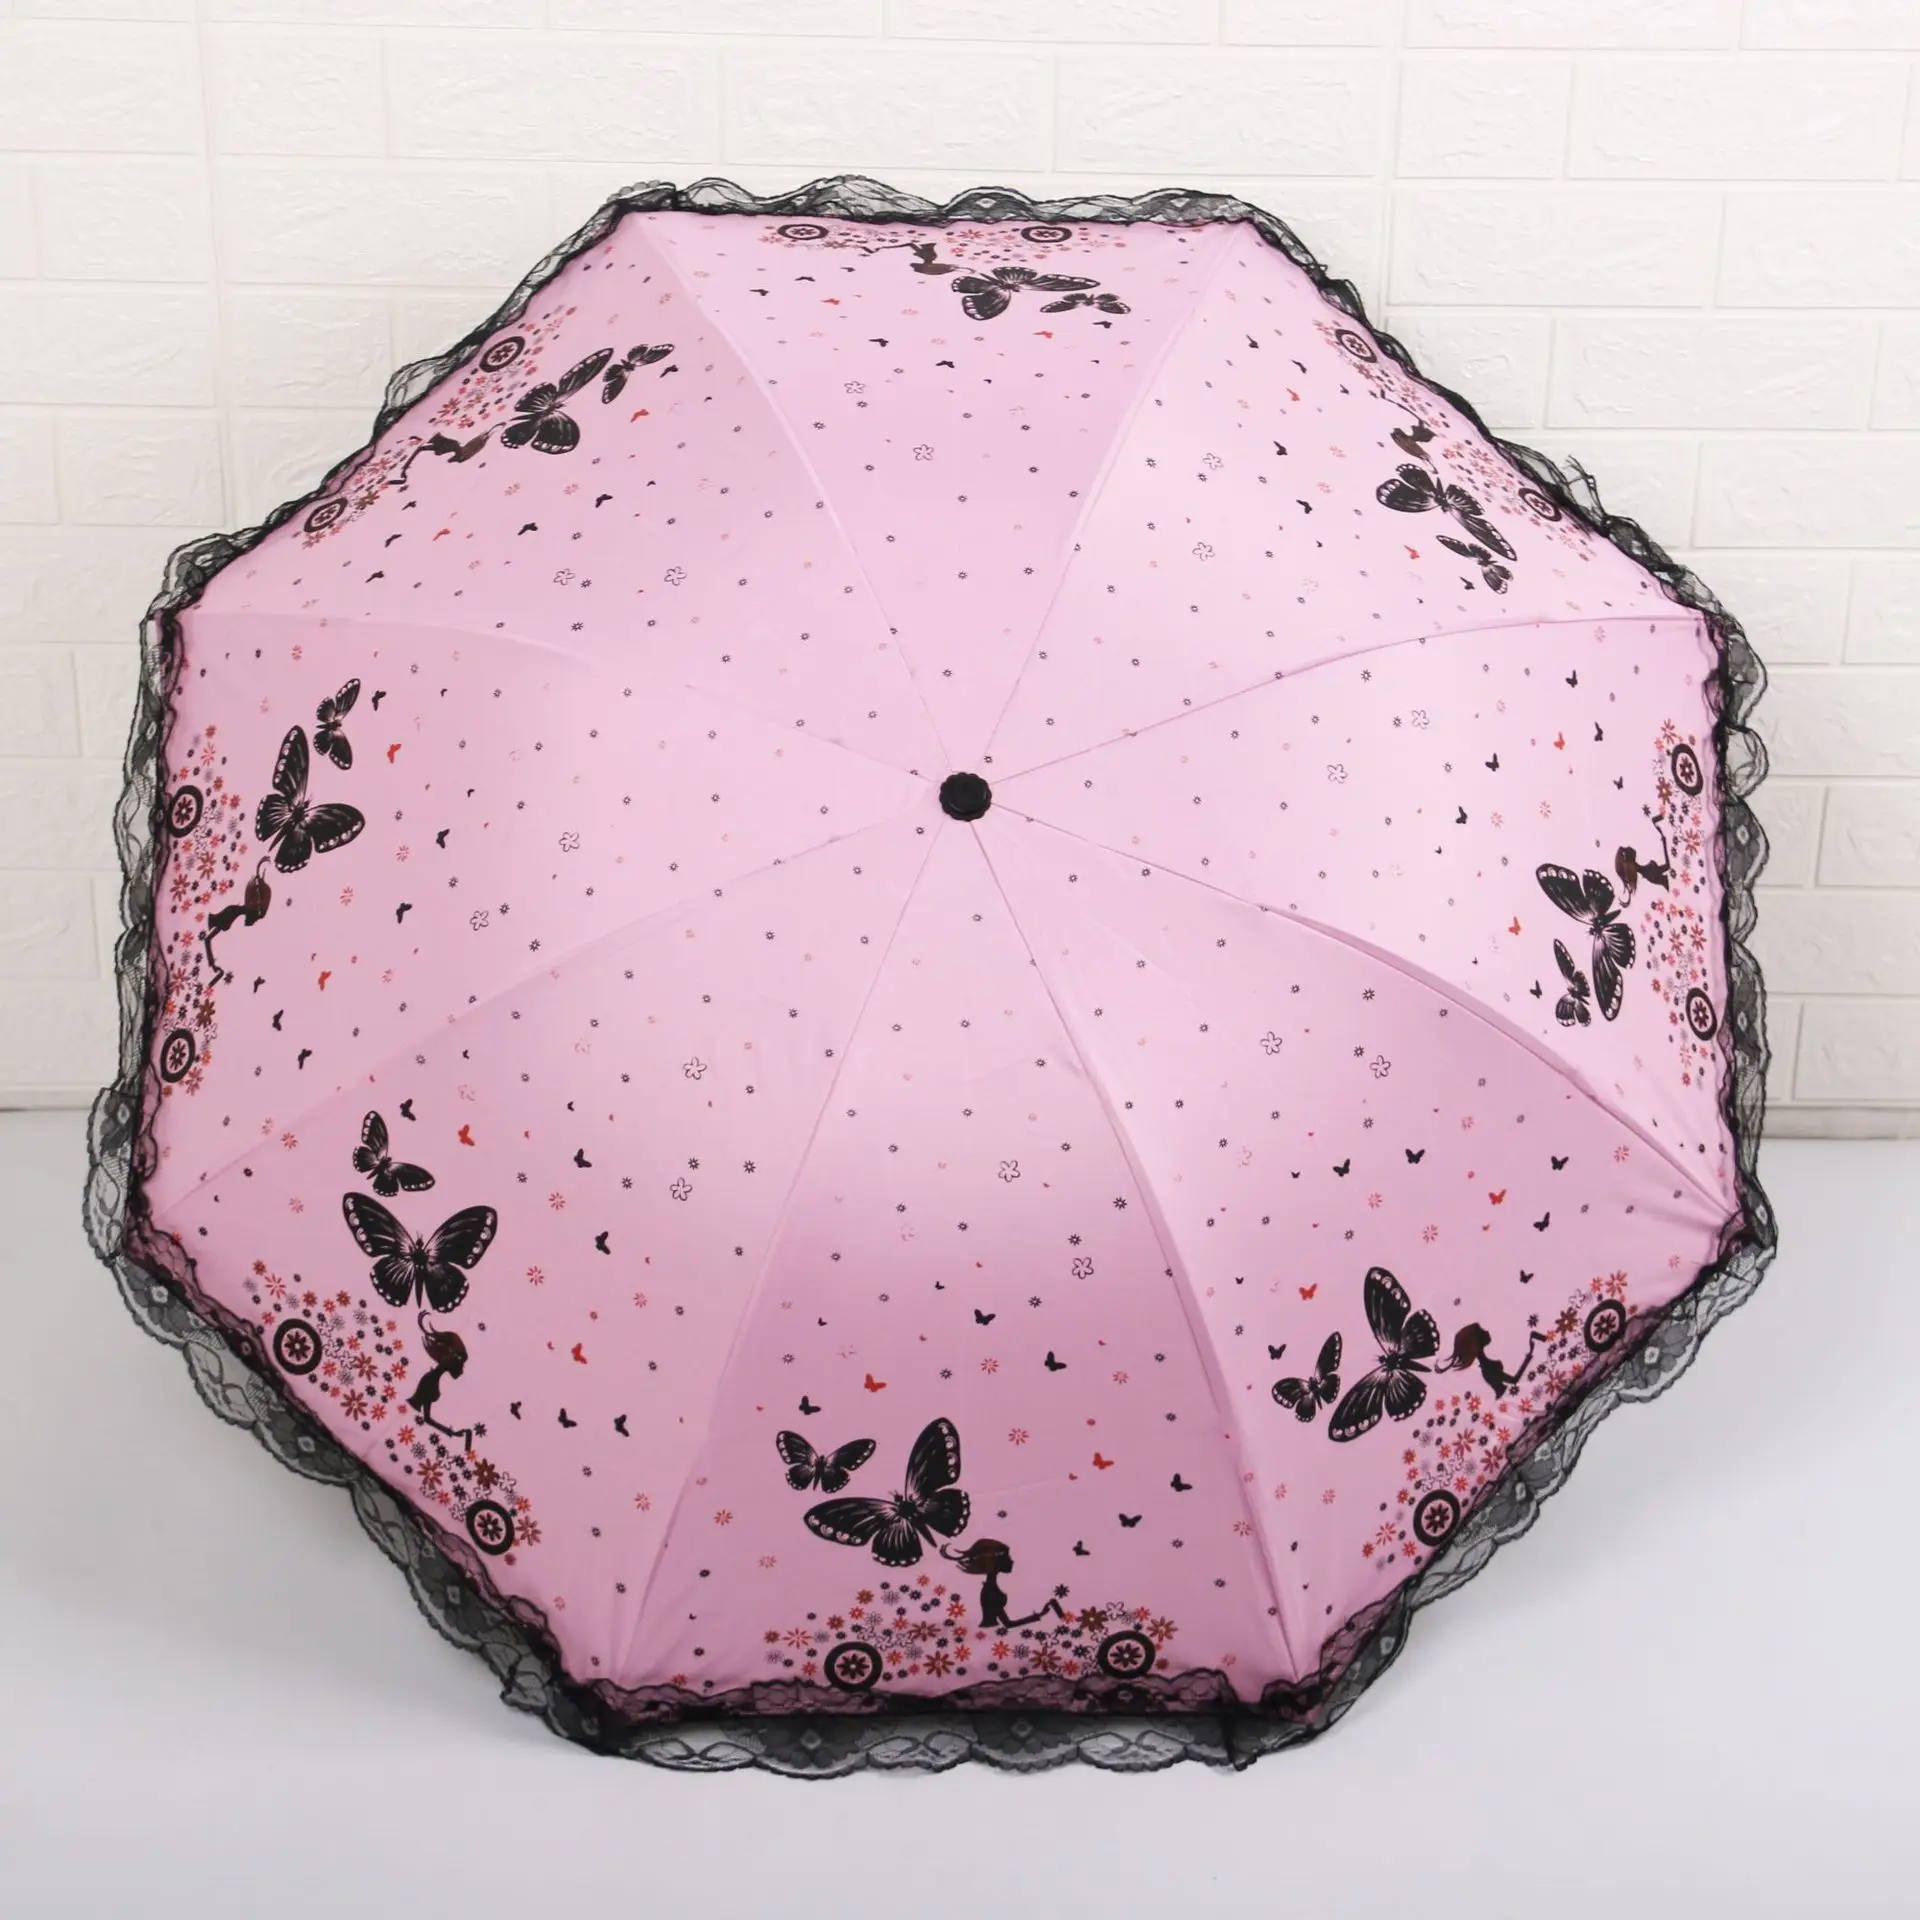 Креативный кружевной зонт с черной подкладкой солнечный и дождливый двойной зонтик для солнца романтическая бабочка Princess3 складной зонт - Цвет: pink